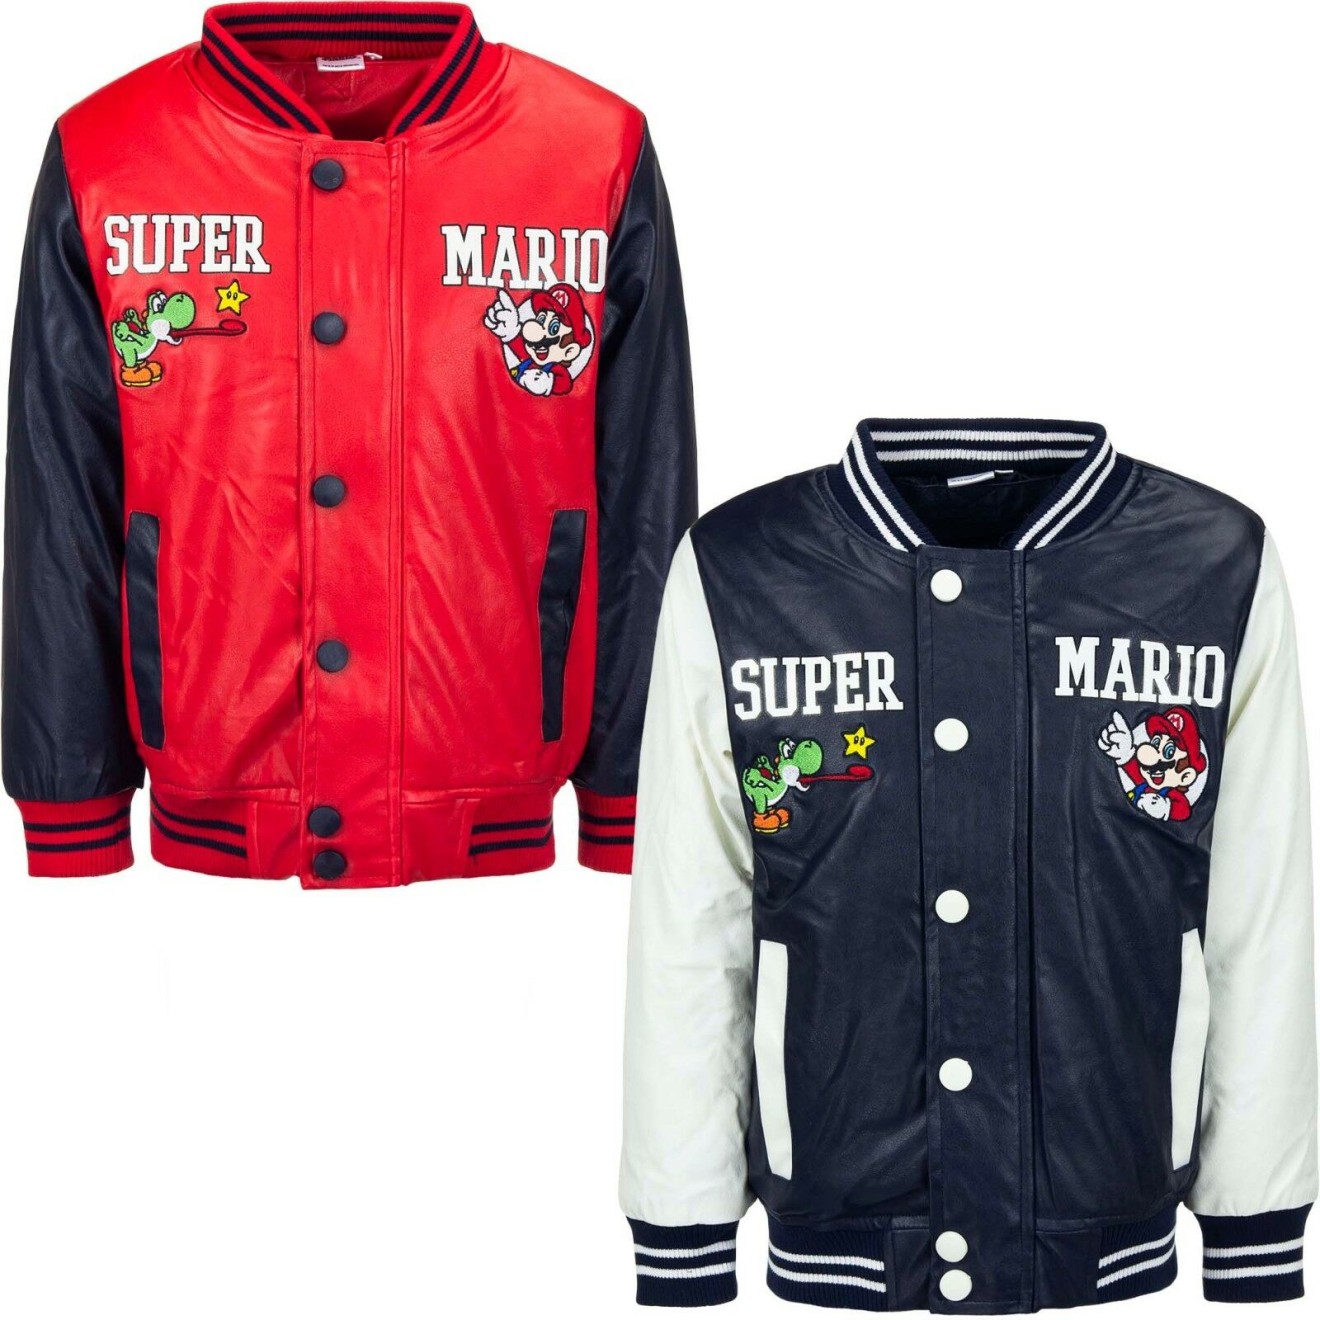 Super Mario - Lucille College Jacket kids